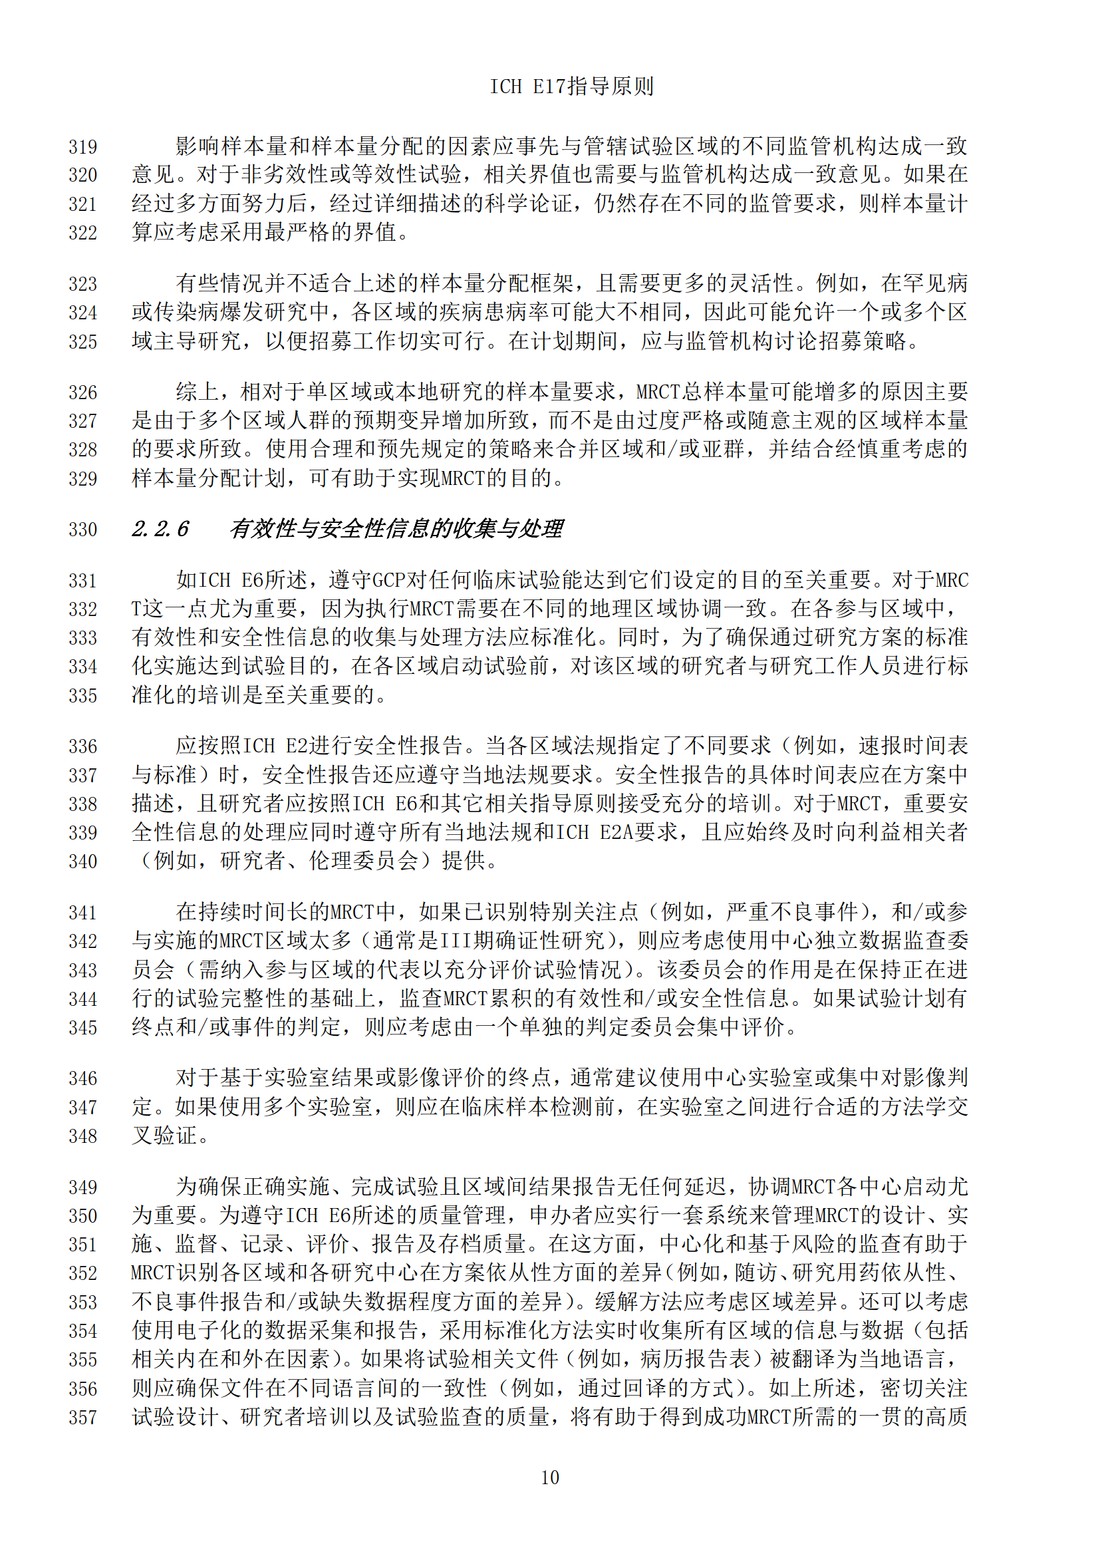 E17多区域临床试验计划与设计的一般原则（中文翻译公开征求意见稿）_13.jpg